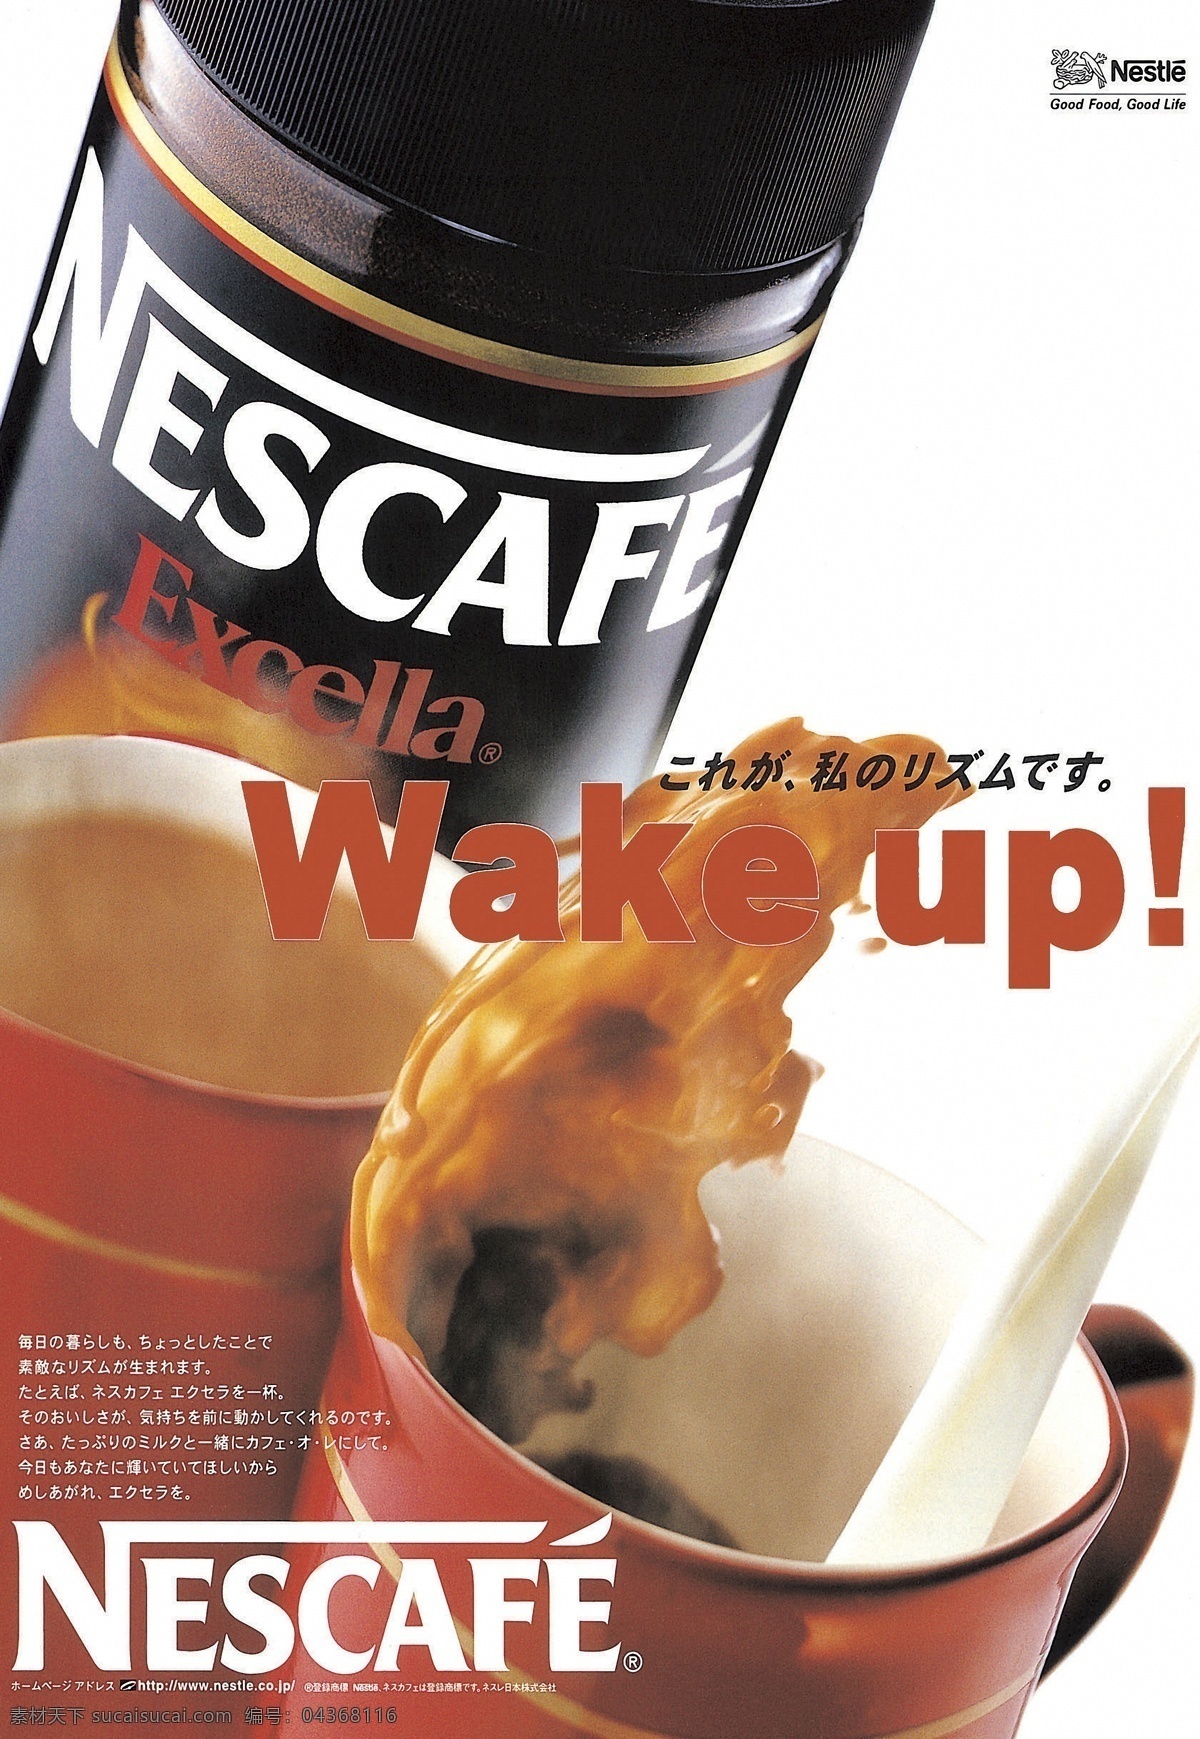 0018咖啡 广告 平面 设计素材 食品餐饮 平面创意 平面设计 白色